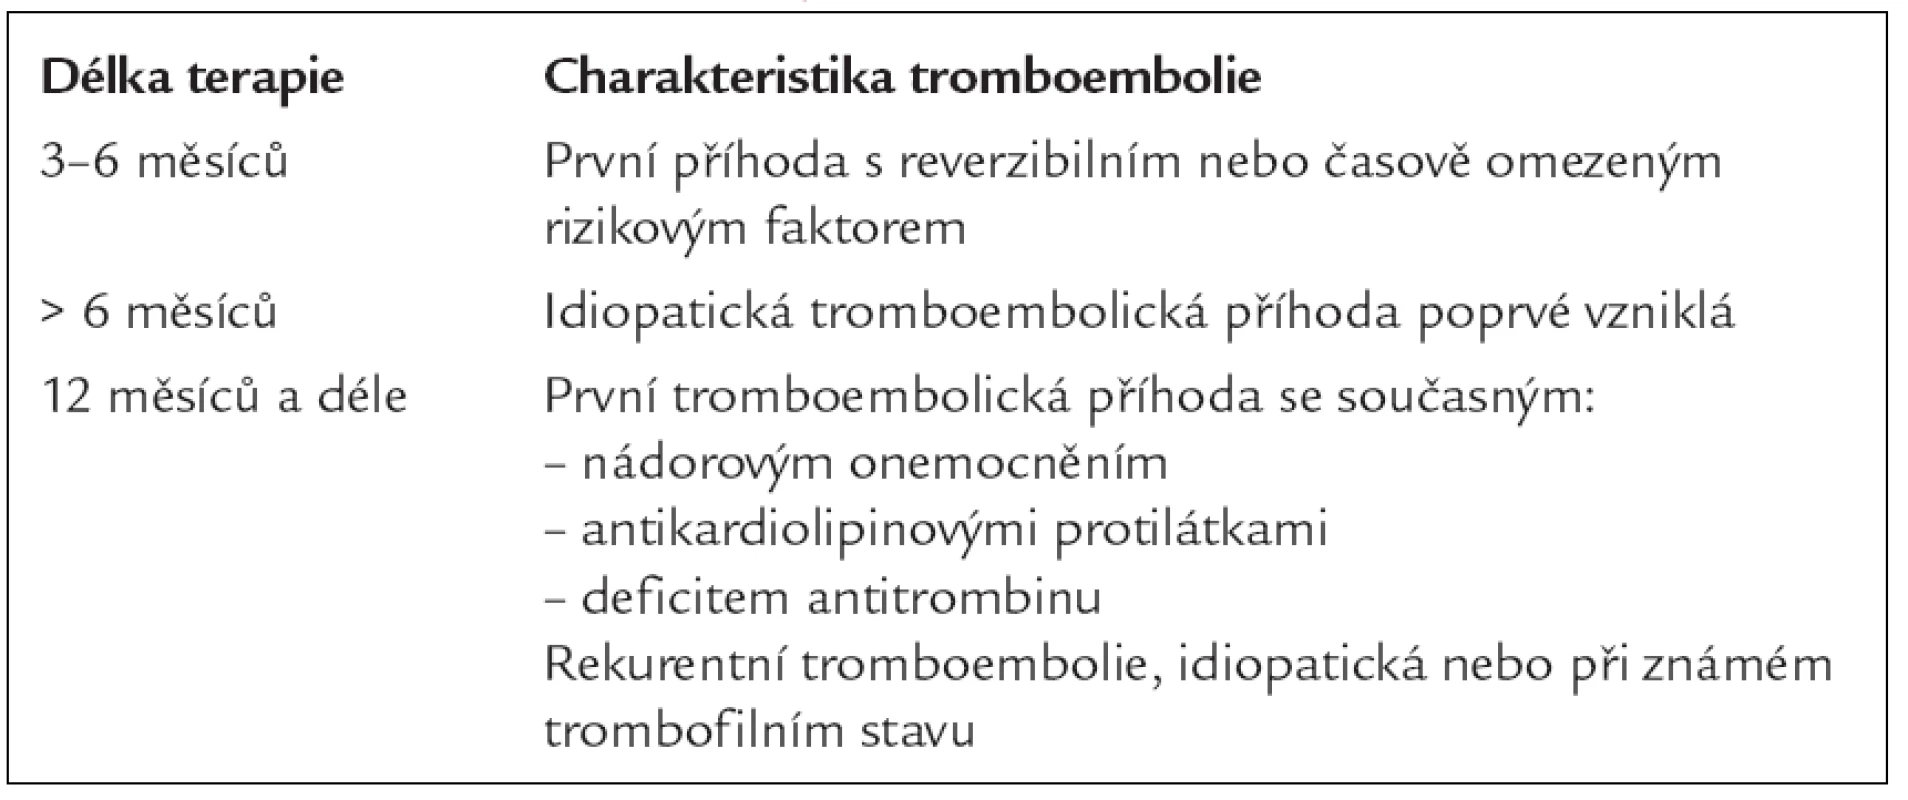 Délka terapie u nemocných s tromboembolií.